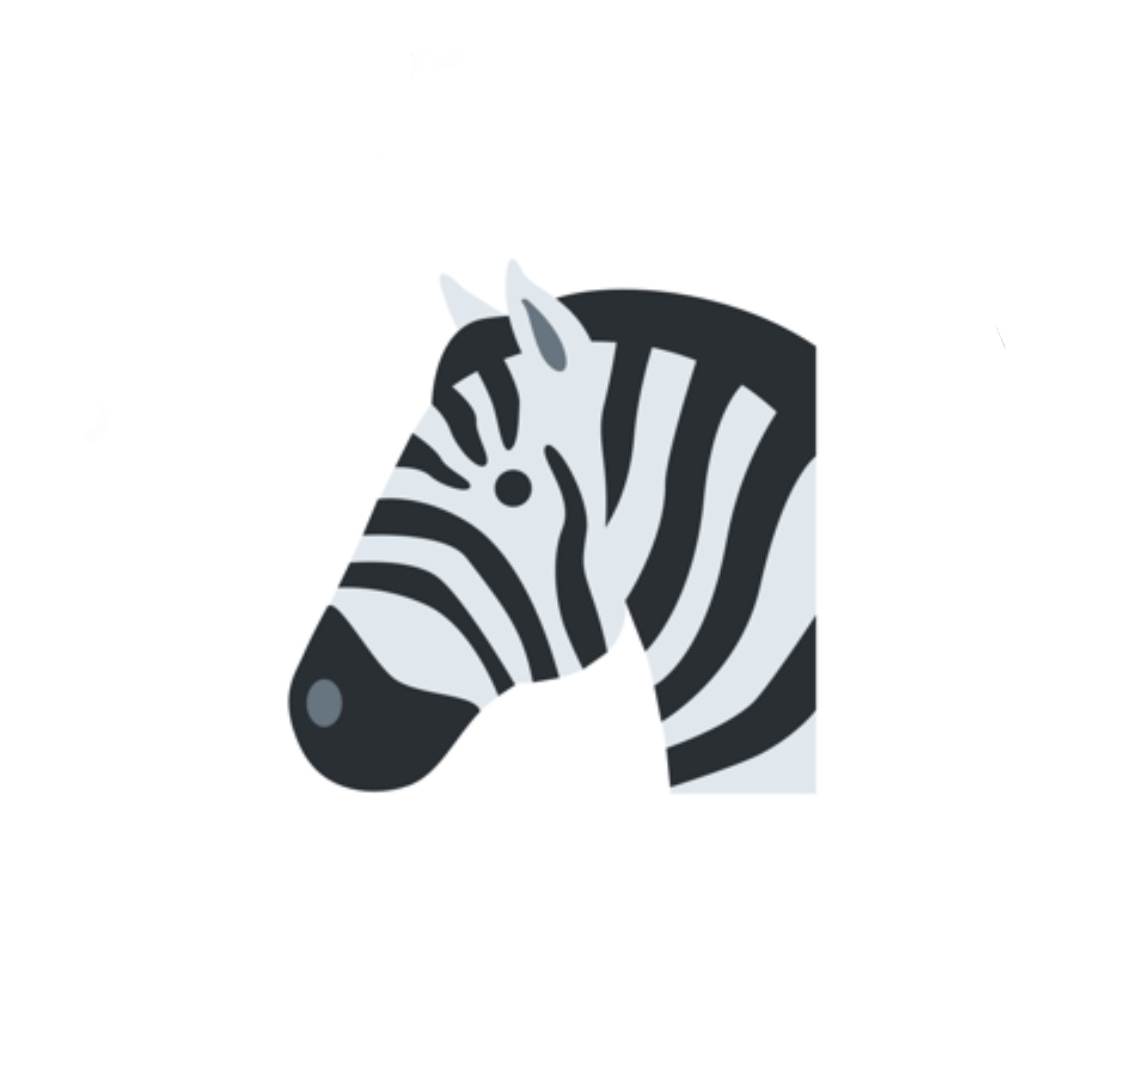 Zebra v1.0.7 исправляет повреждения путем сортировки в алфавитном порядке 7